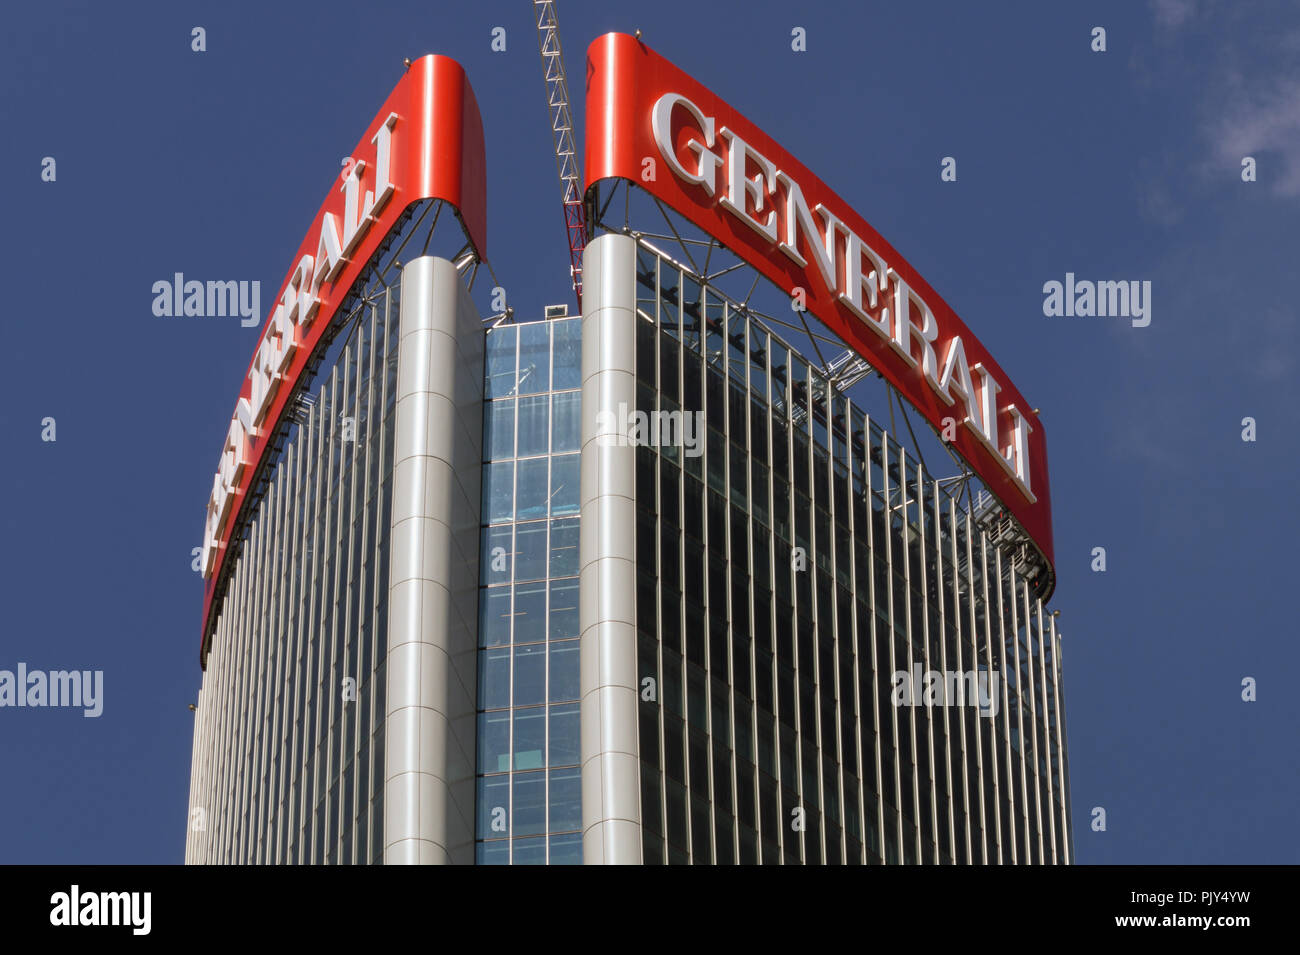 Segno di Assicurazioni Generali compagnia d'assicurazione italiana sulla sommità della torre Generali di Milano Progettato da Zaha Hadid Architects Foto Stock